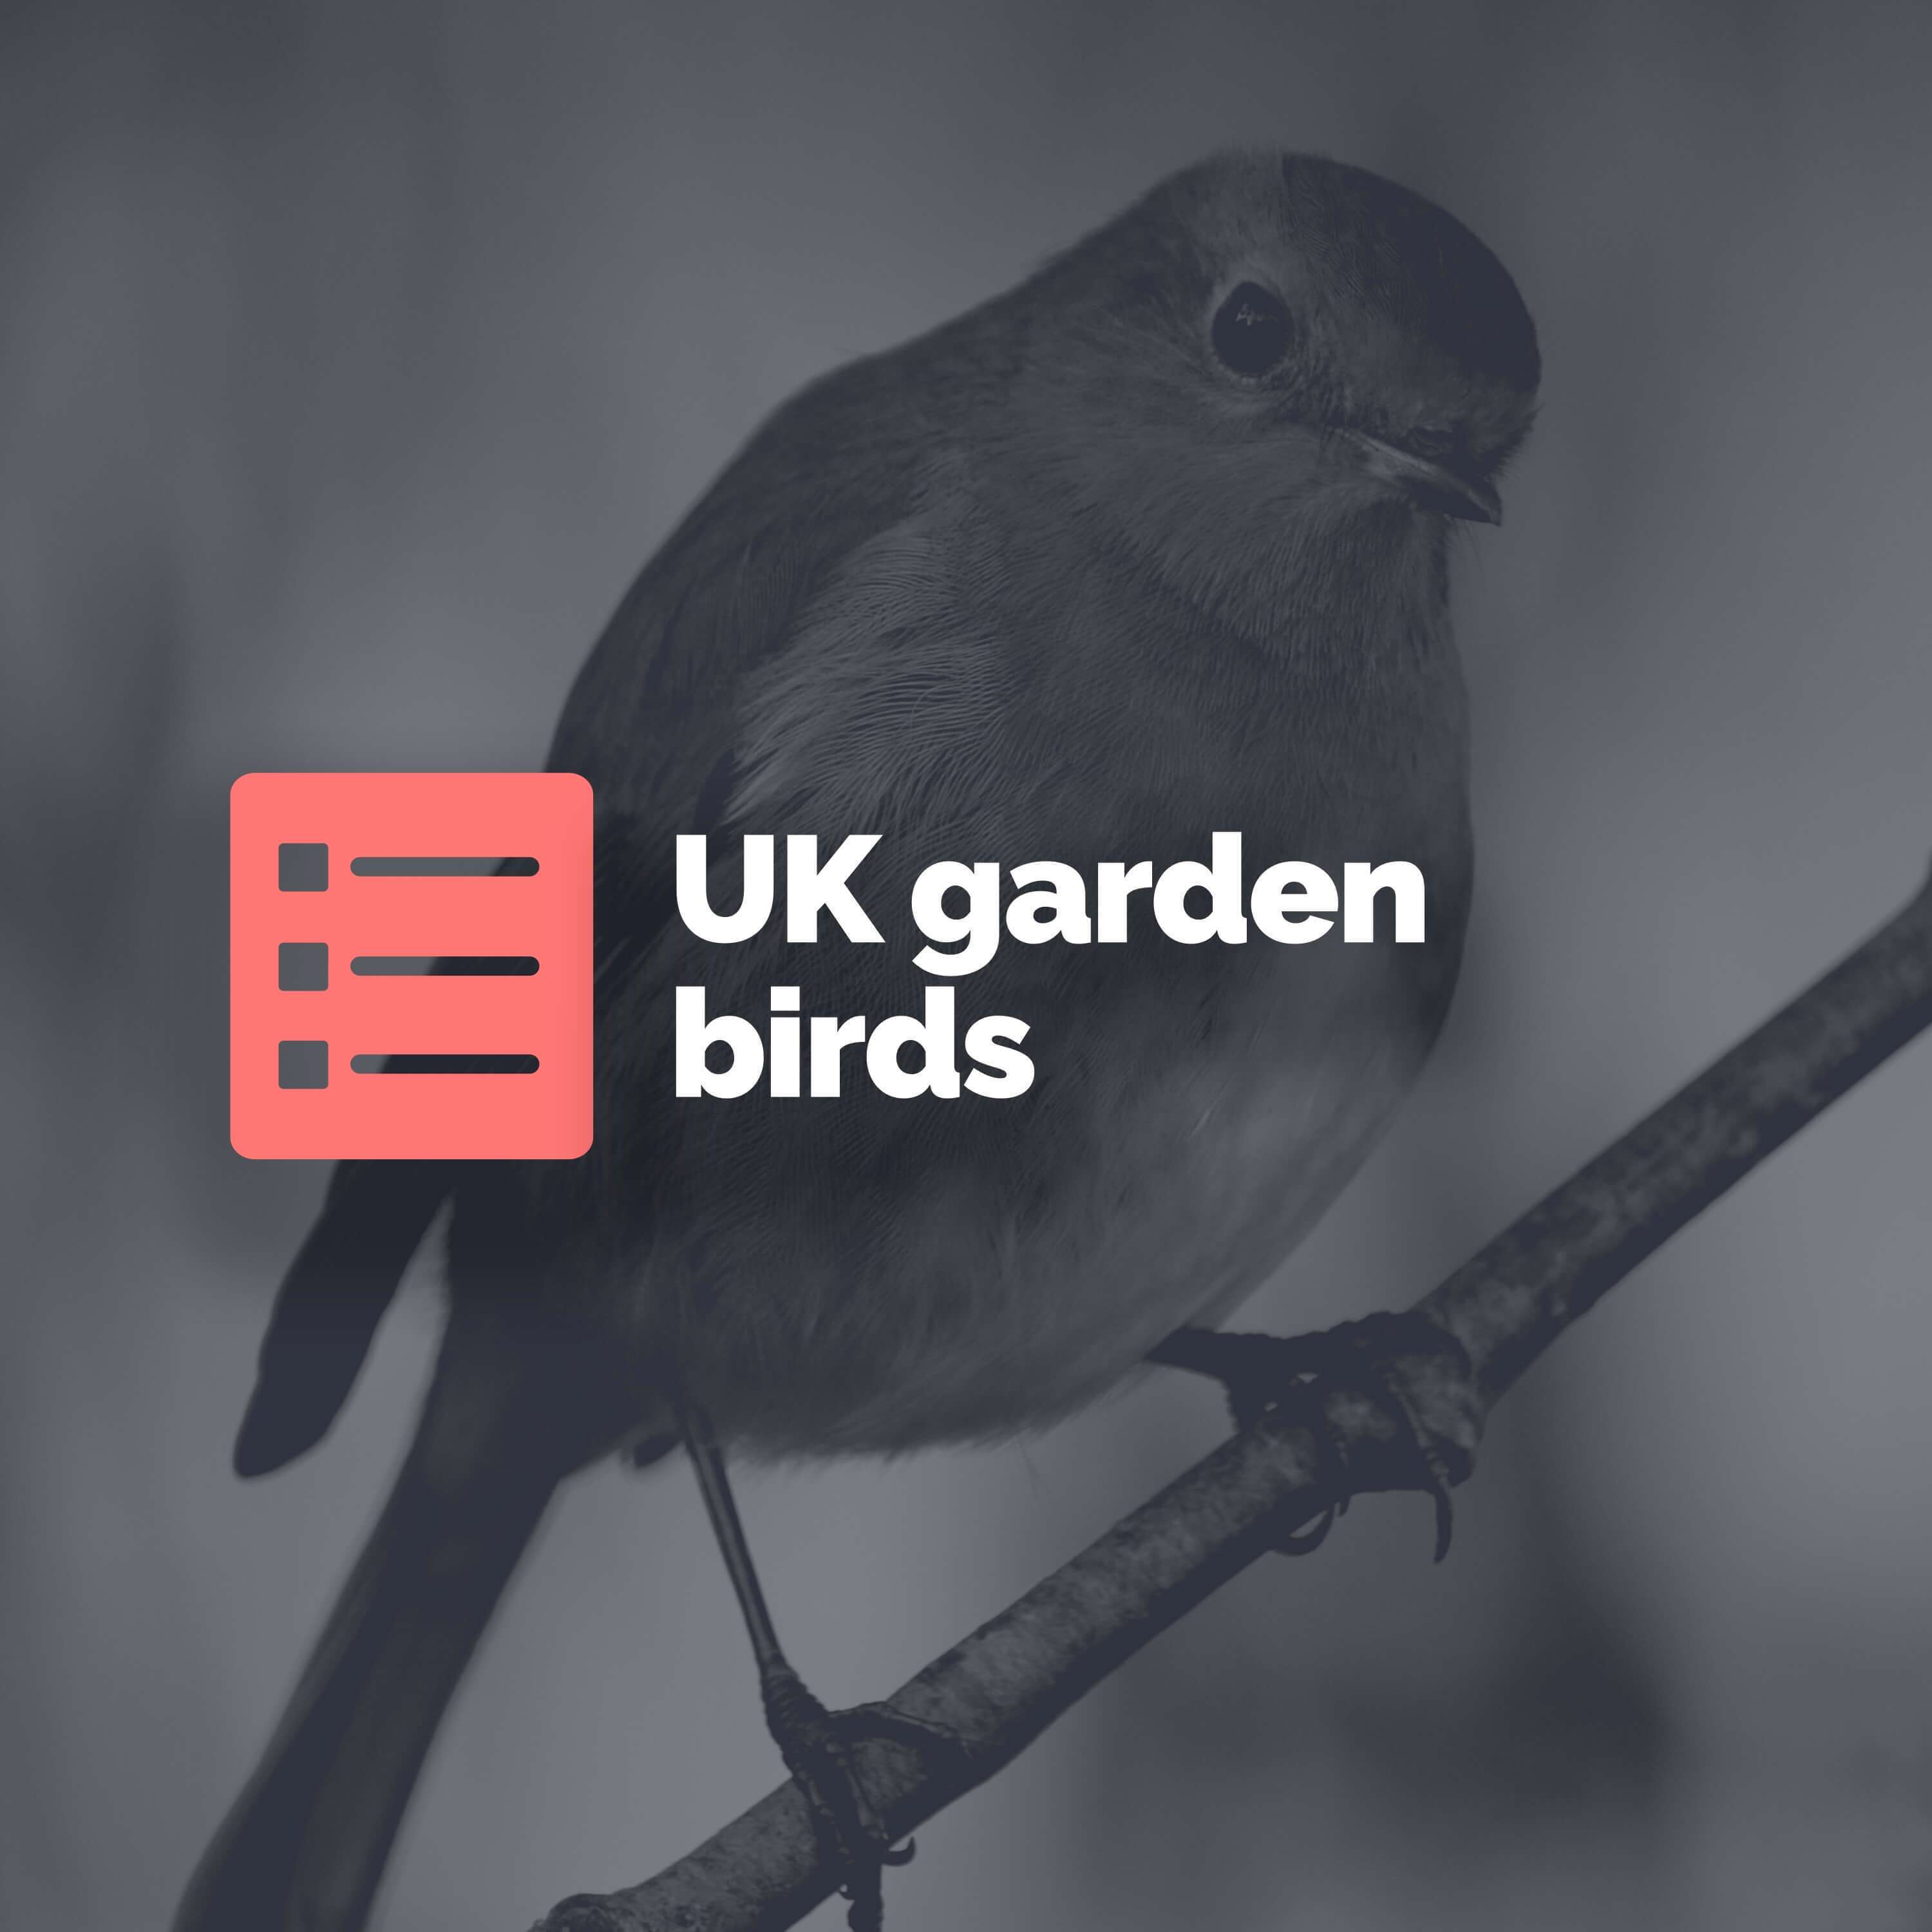 Top 5 UK garden birds